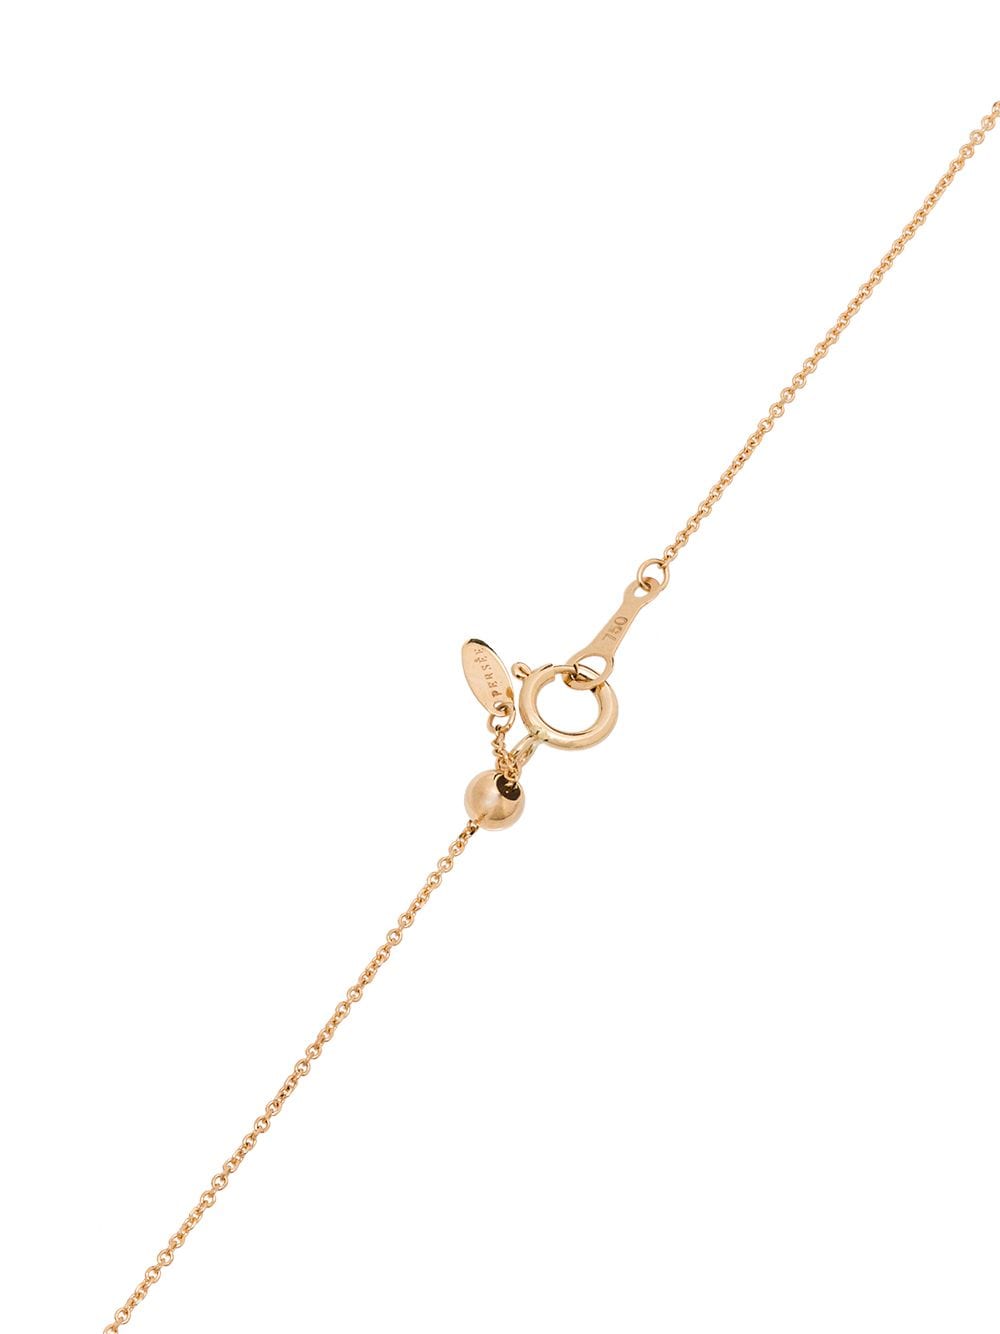 Shop Persée 18k Yellow Gold Diamond Necklace